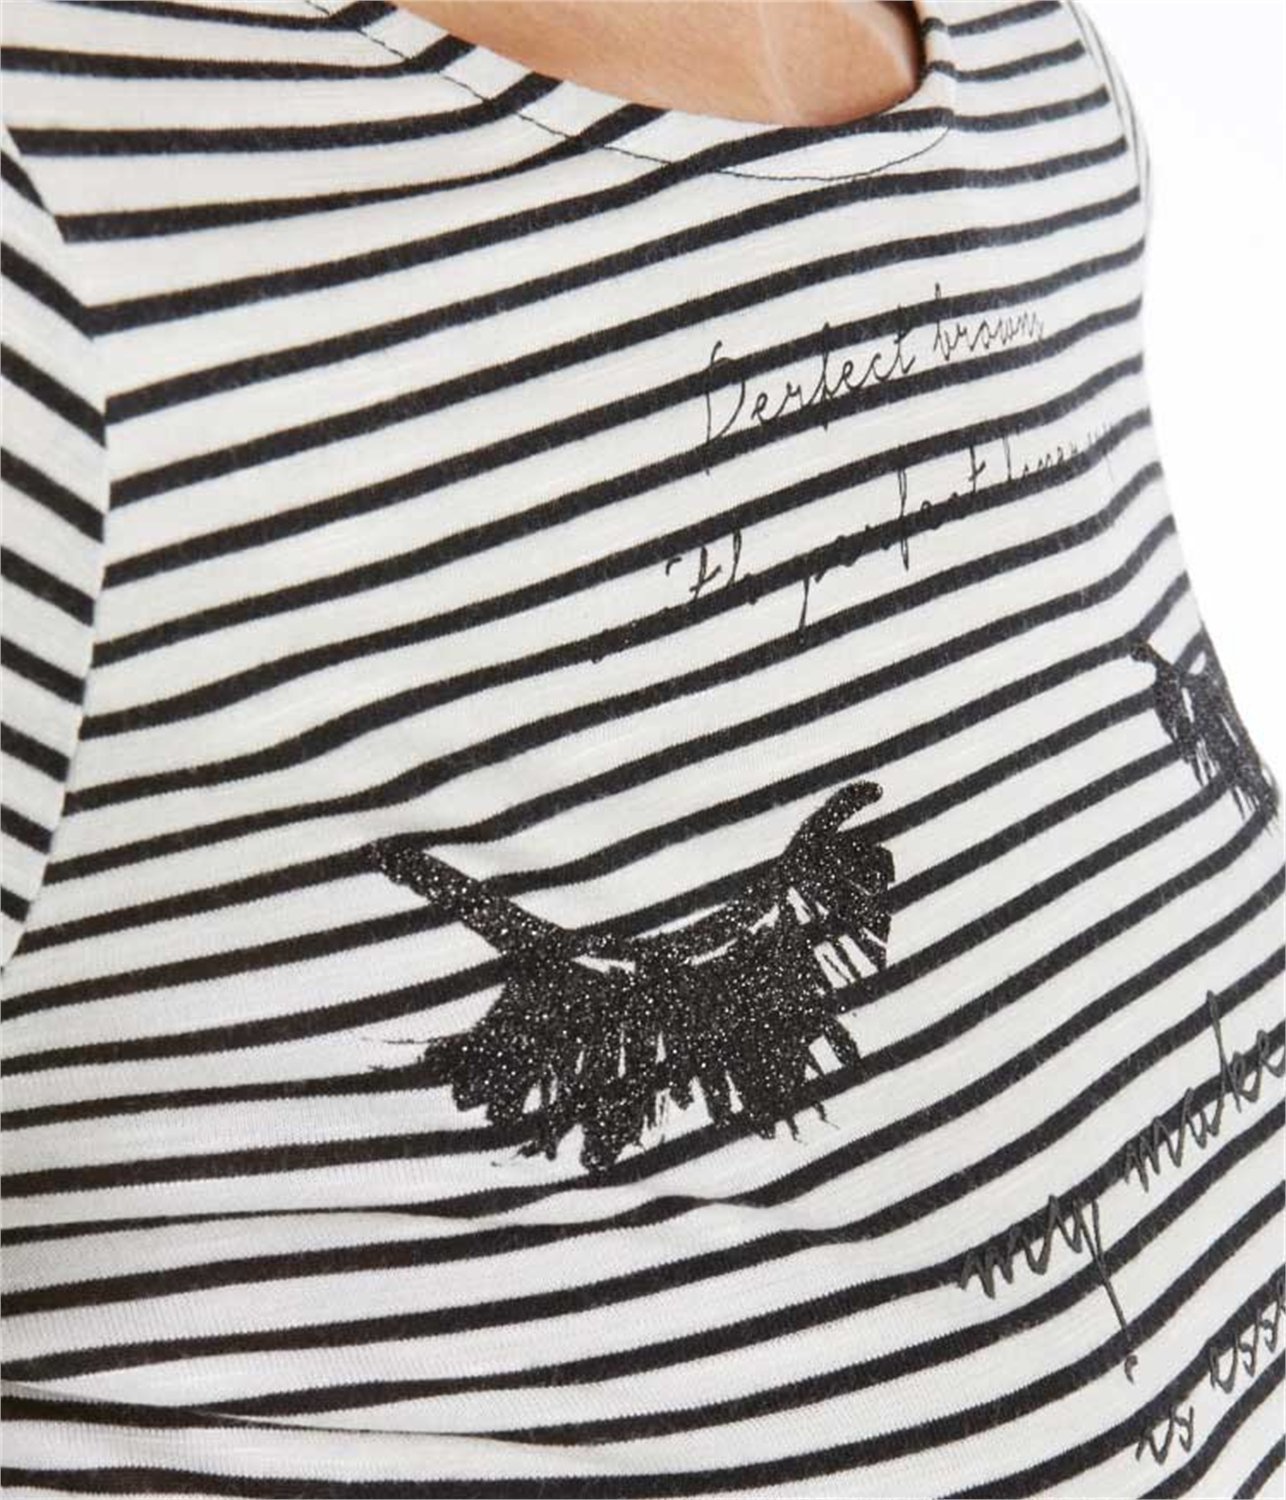 Camaieu női csíkos t-shirt 2015.03.02 fotója